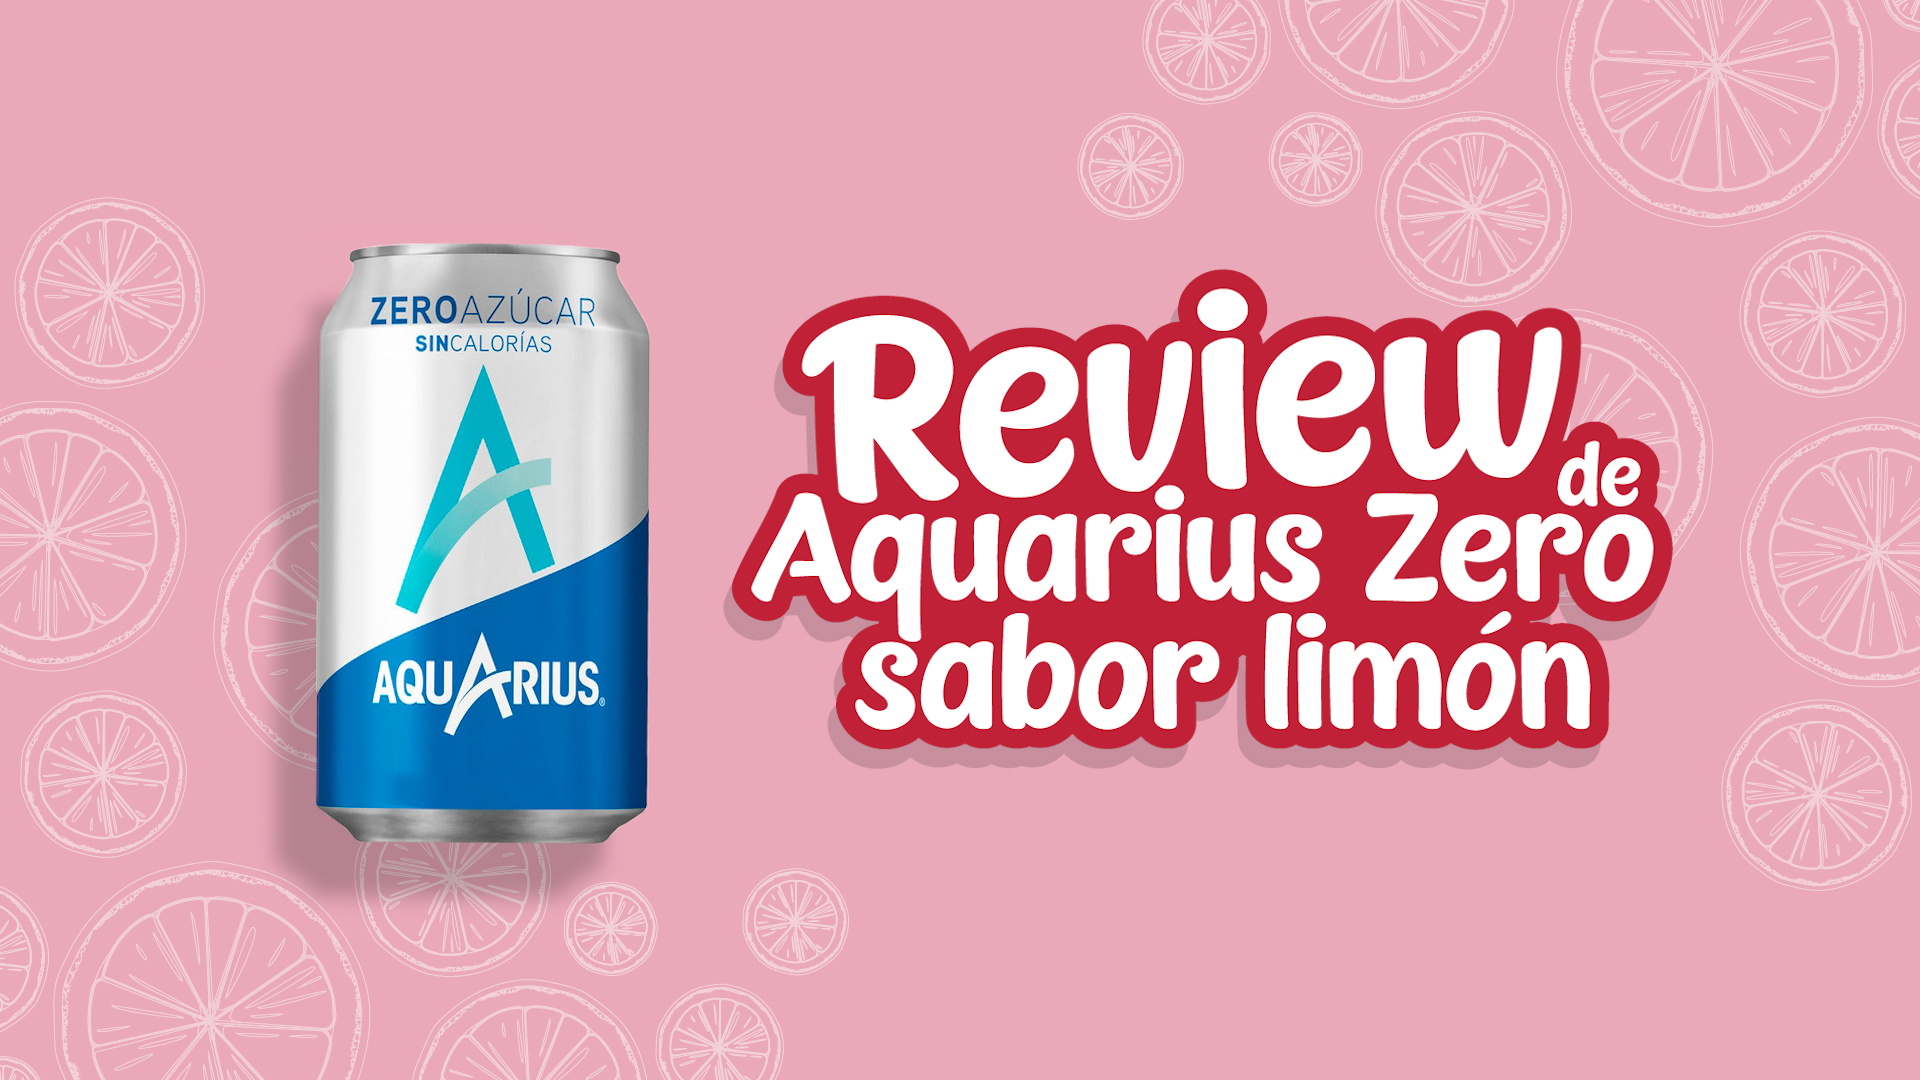 Aquarius zero sabor limÃ³n